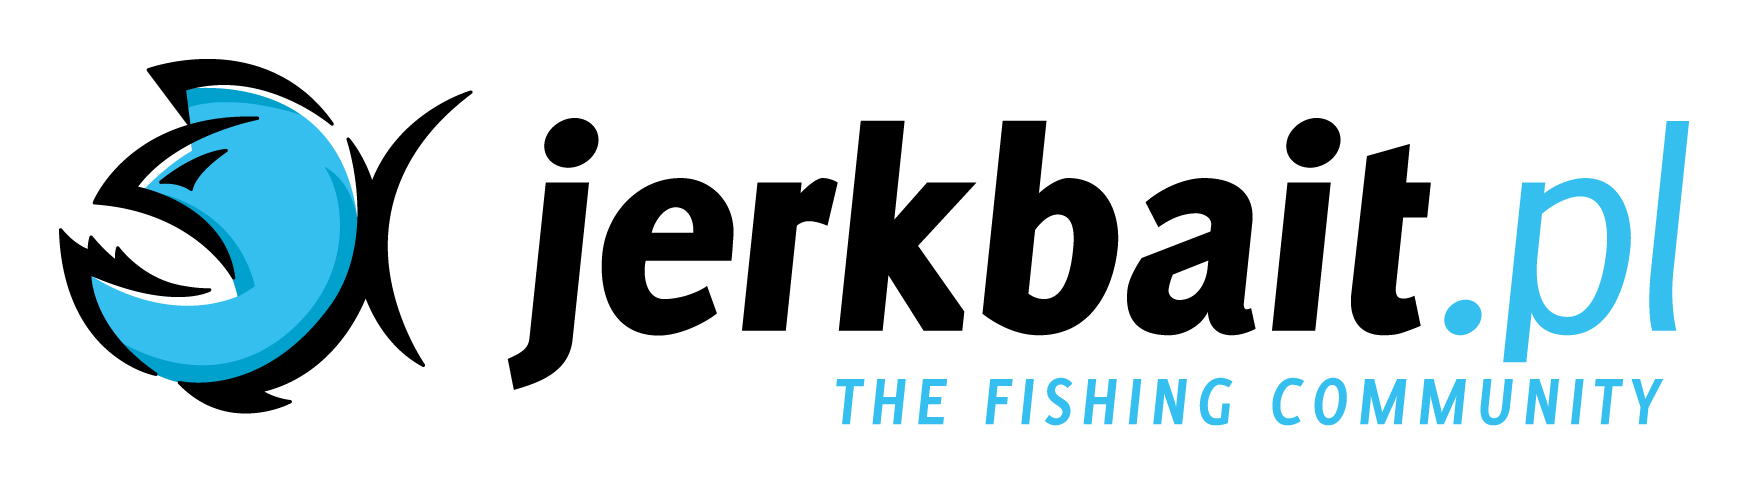 Jerkbait_logo-01